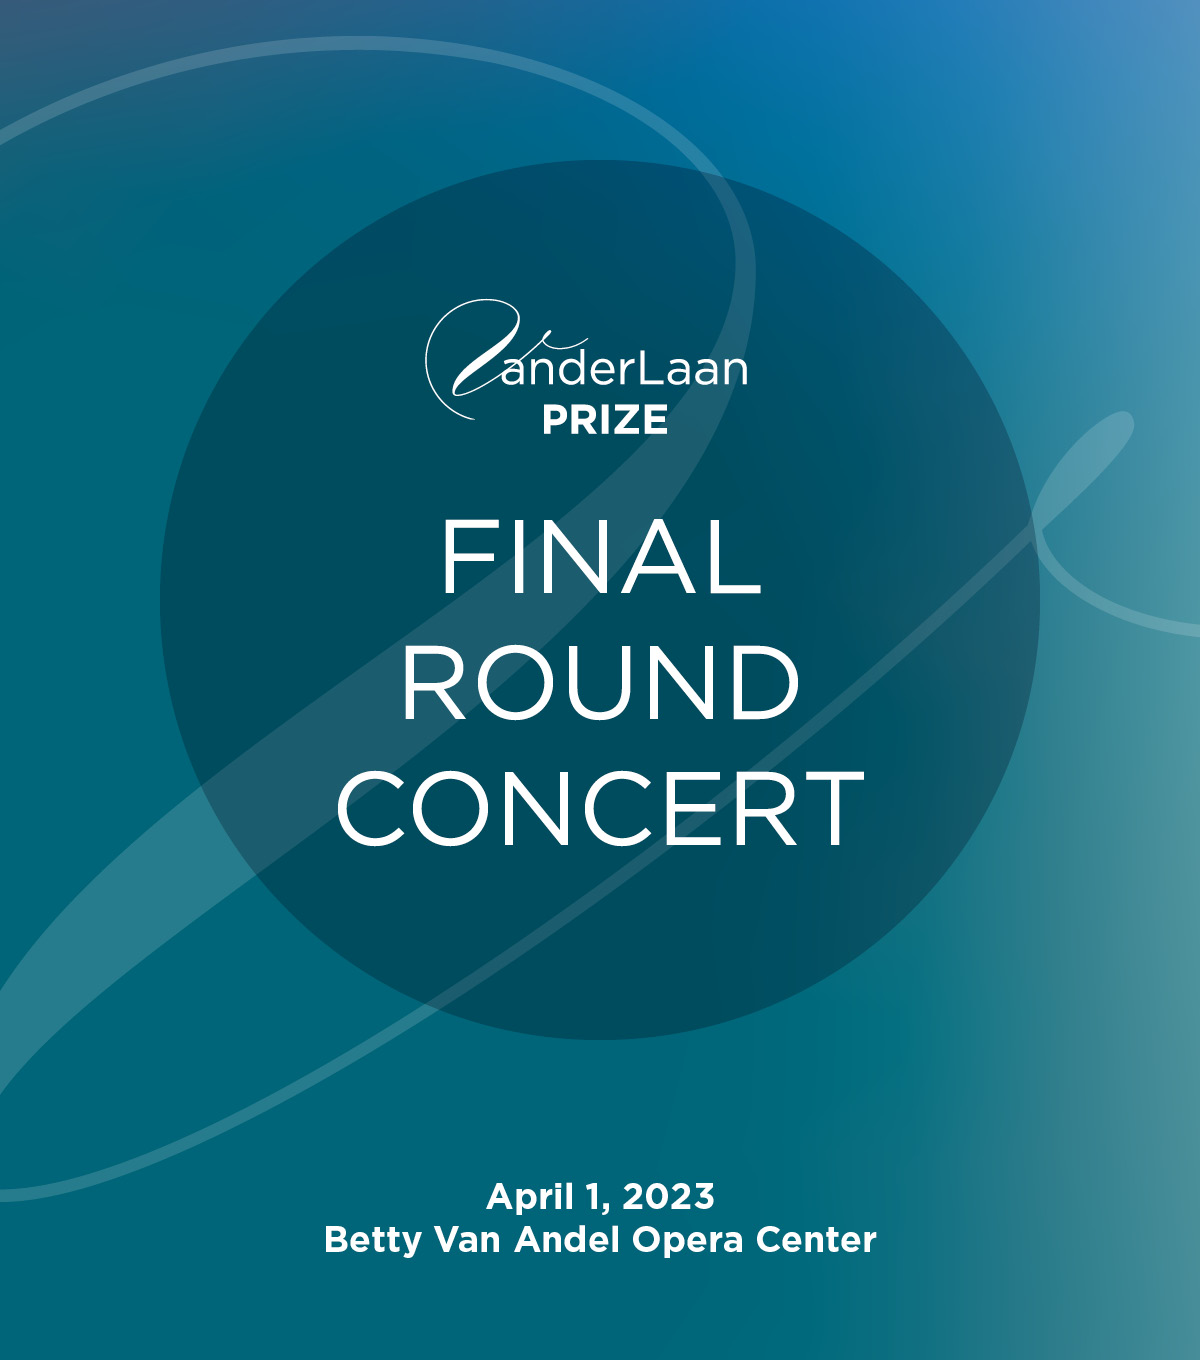 VanderLaan Prize Final Round Concert; April 1, 2023, Betty Van Andel Opera Center